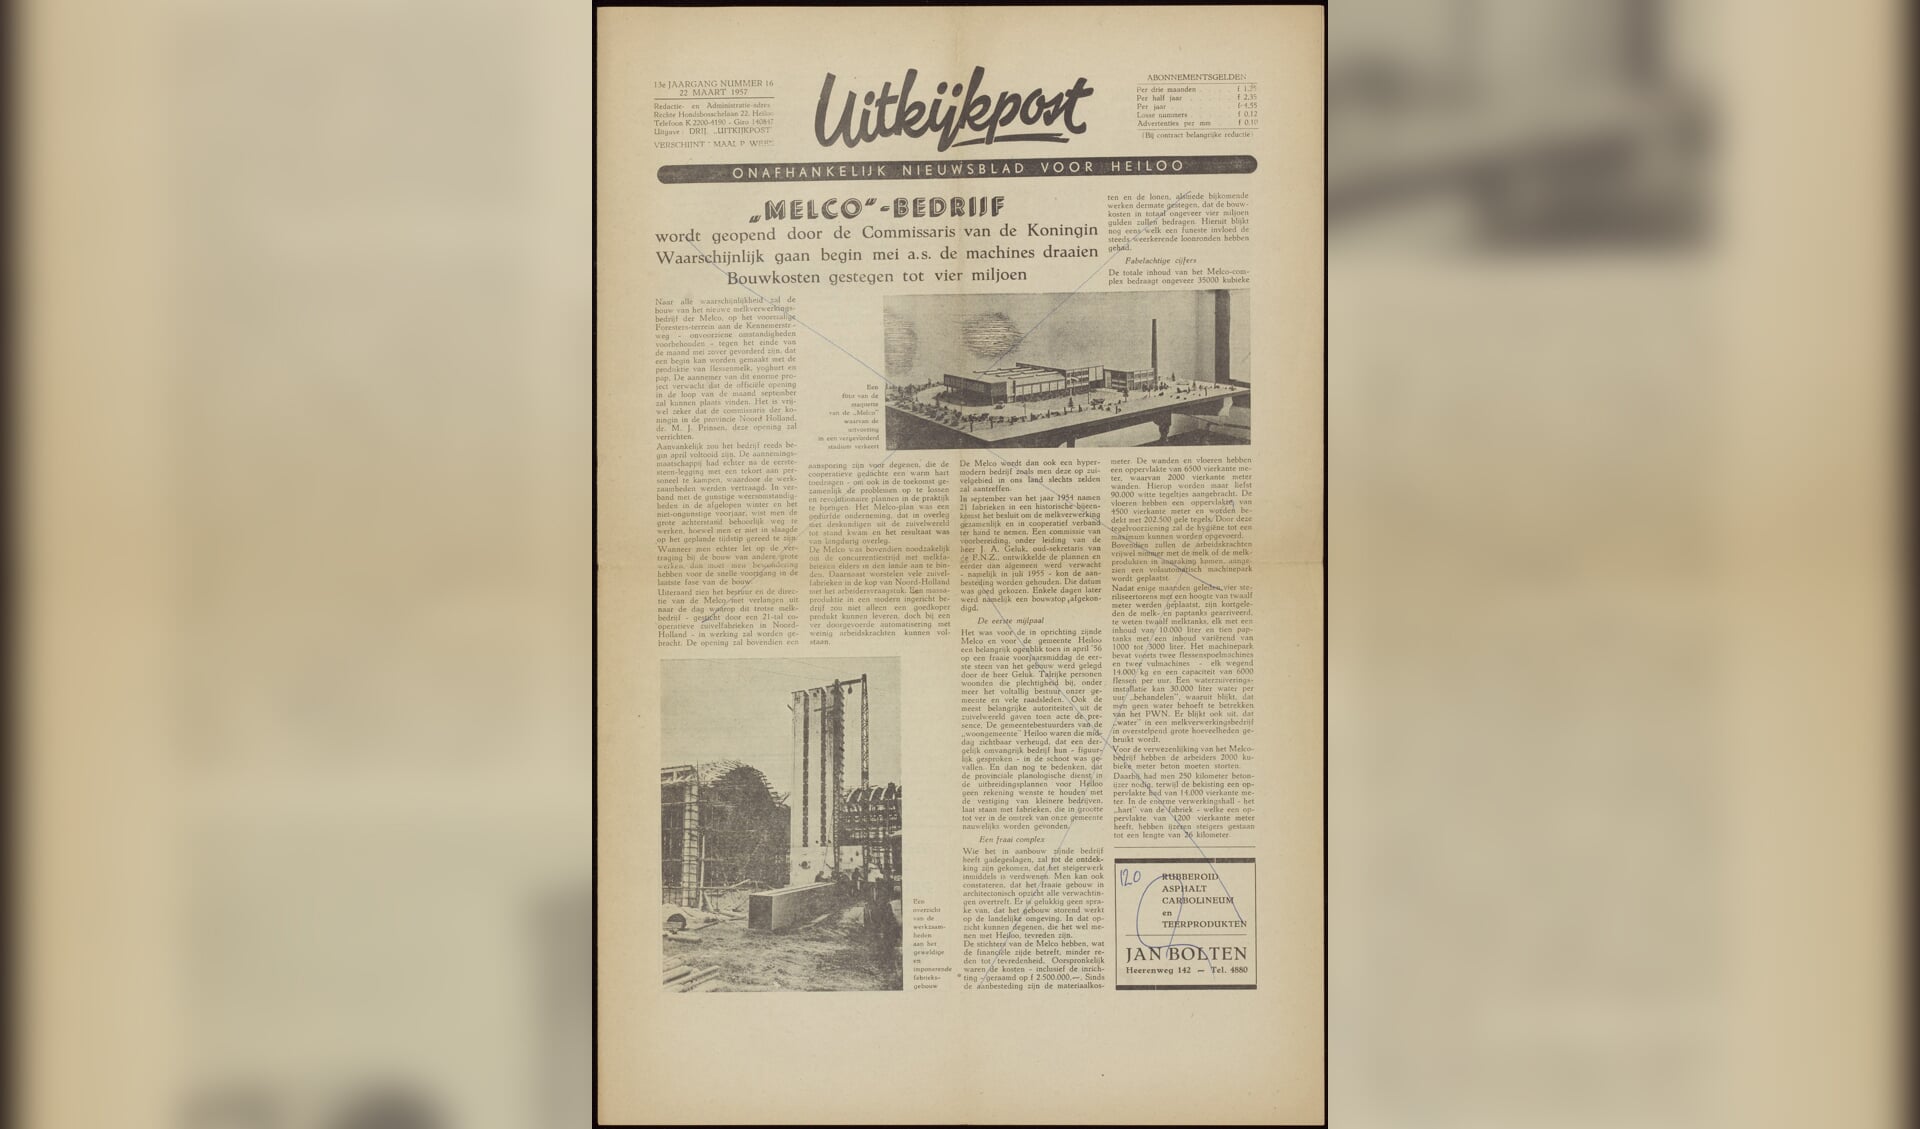 Melco-bedrijf wordt geopend door de Commissaris van de Koningin’ kopt de Uitkijkpost op 22 maart 1957